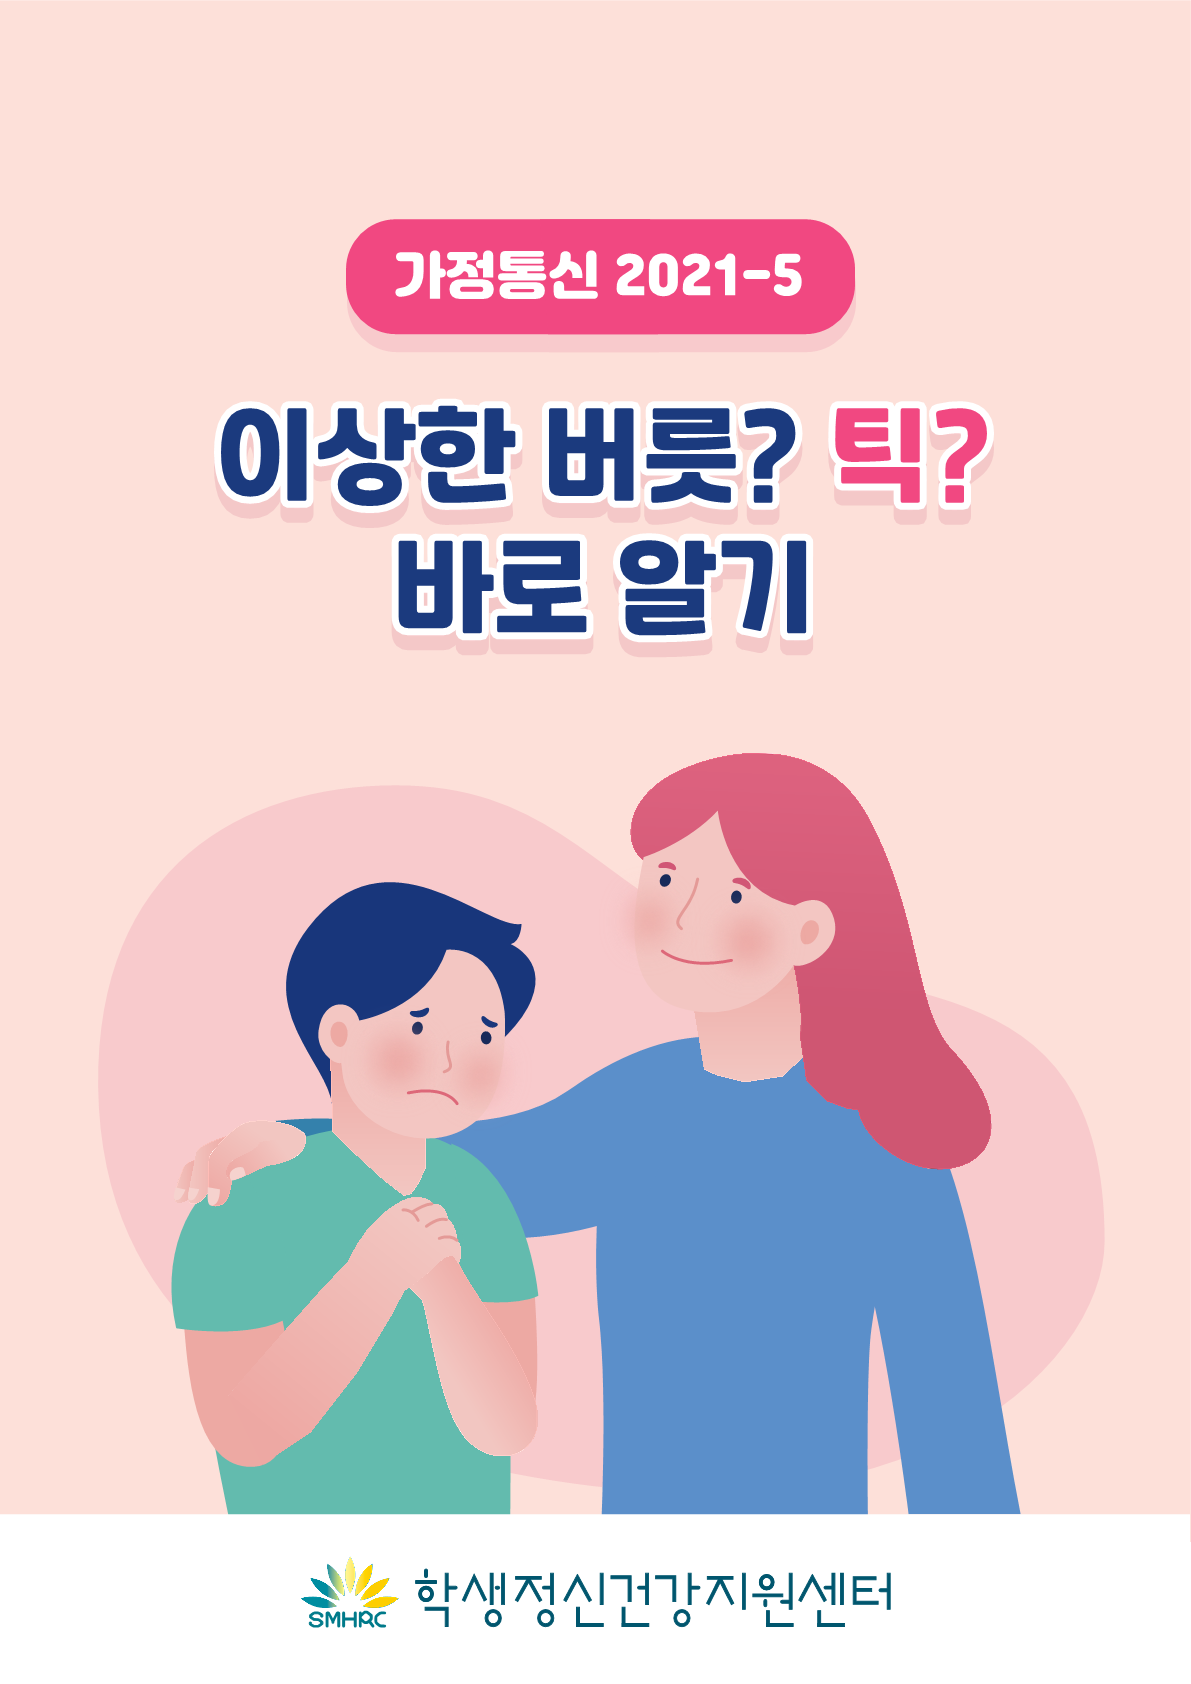 [붙임2]카드뉴스 제2021-5_틱장애(초등학부모용)_1.png